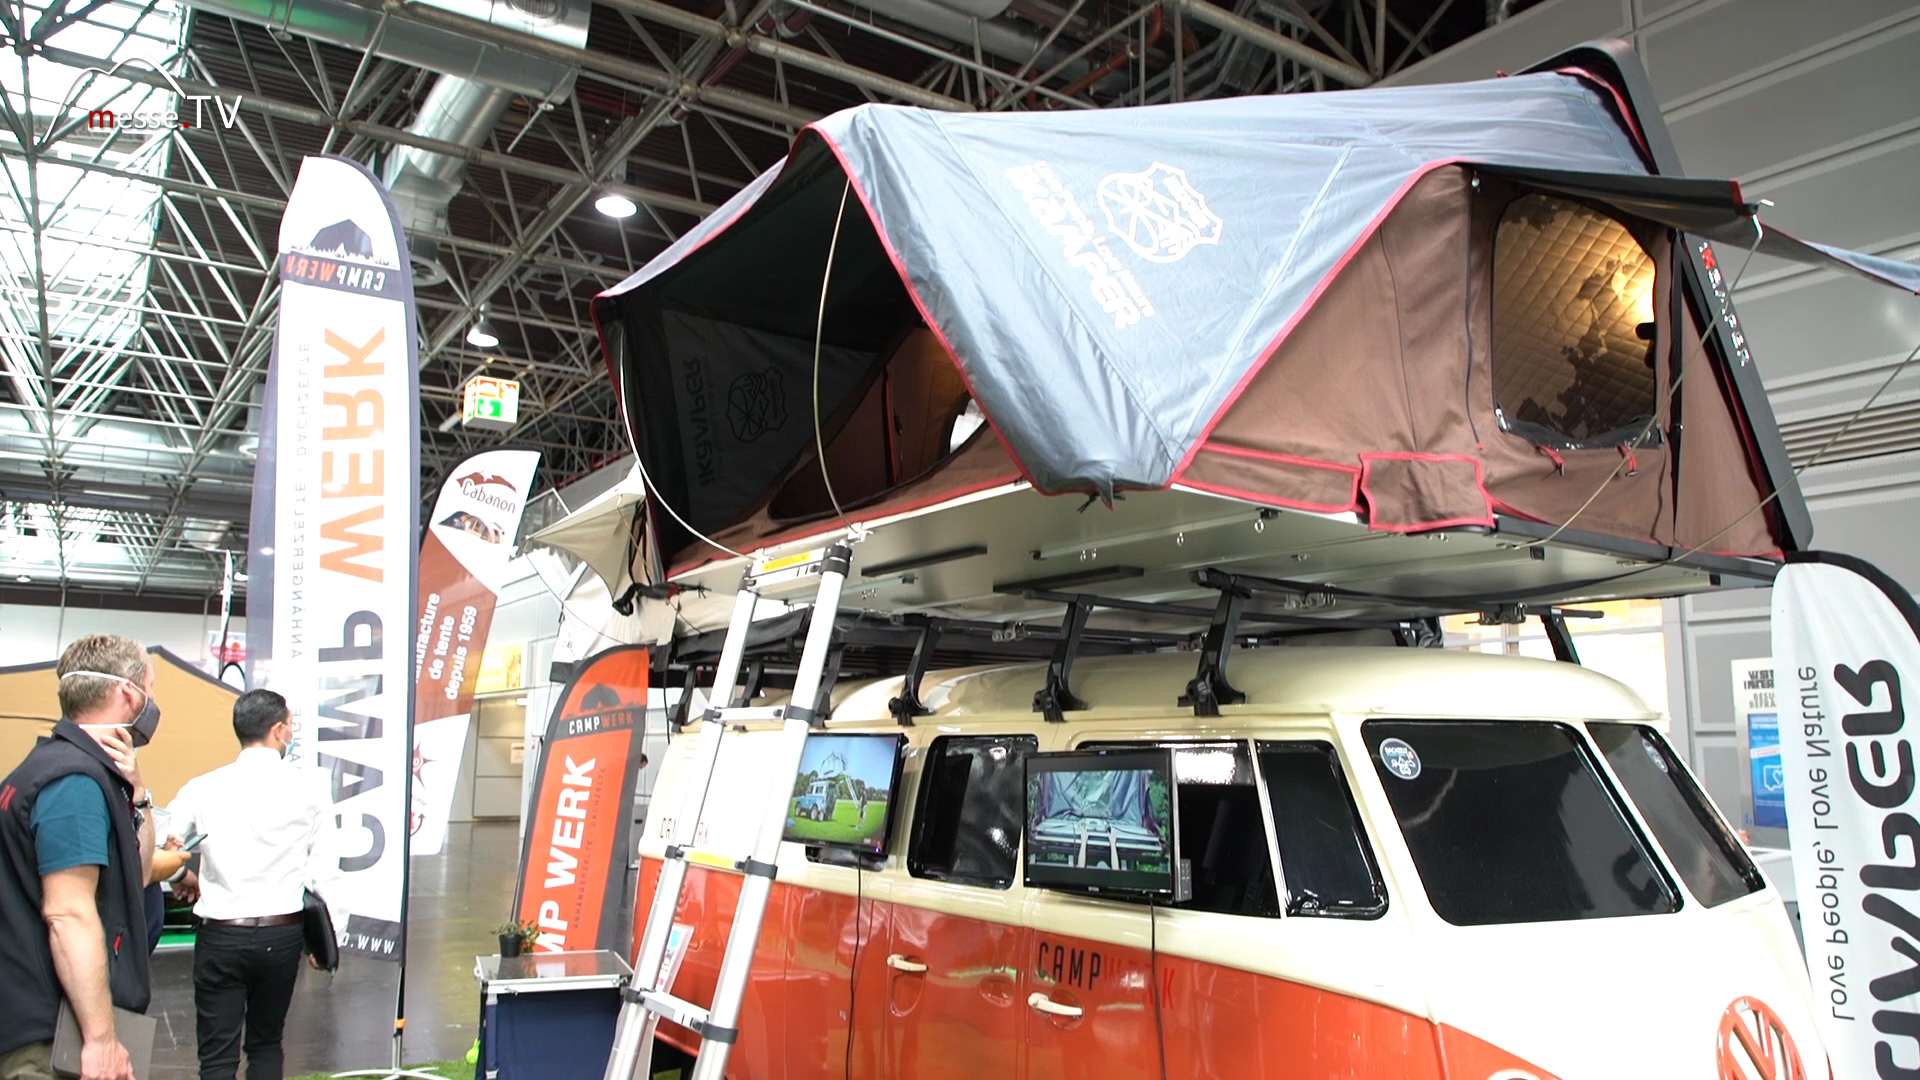 Campwerk iKamper Roof Tent Caravan Salon 2020 Dusseldorf